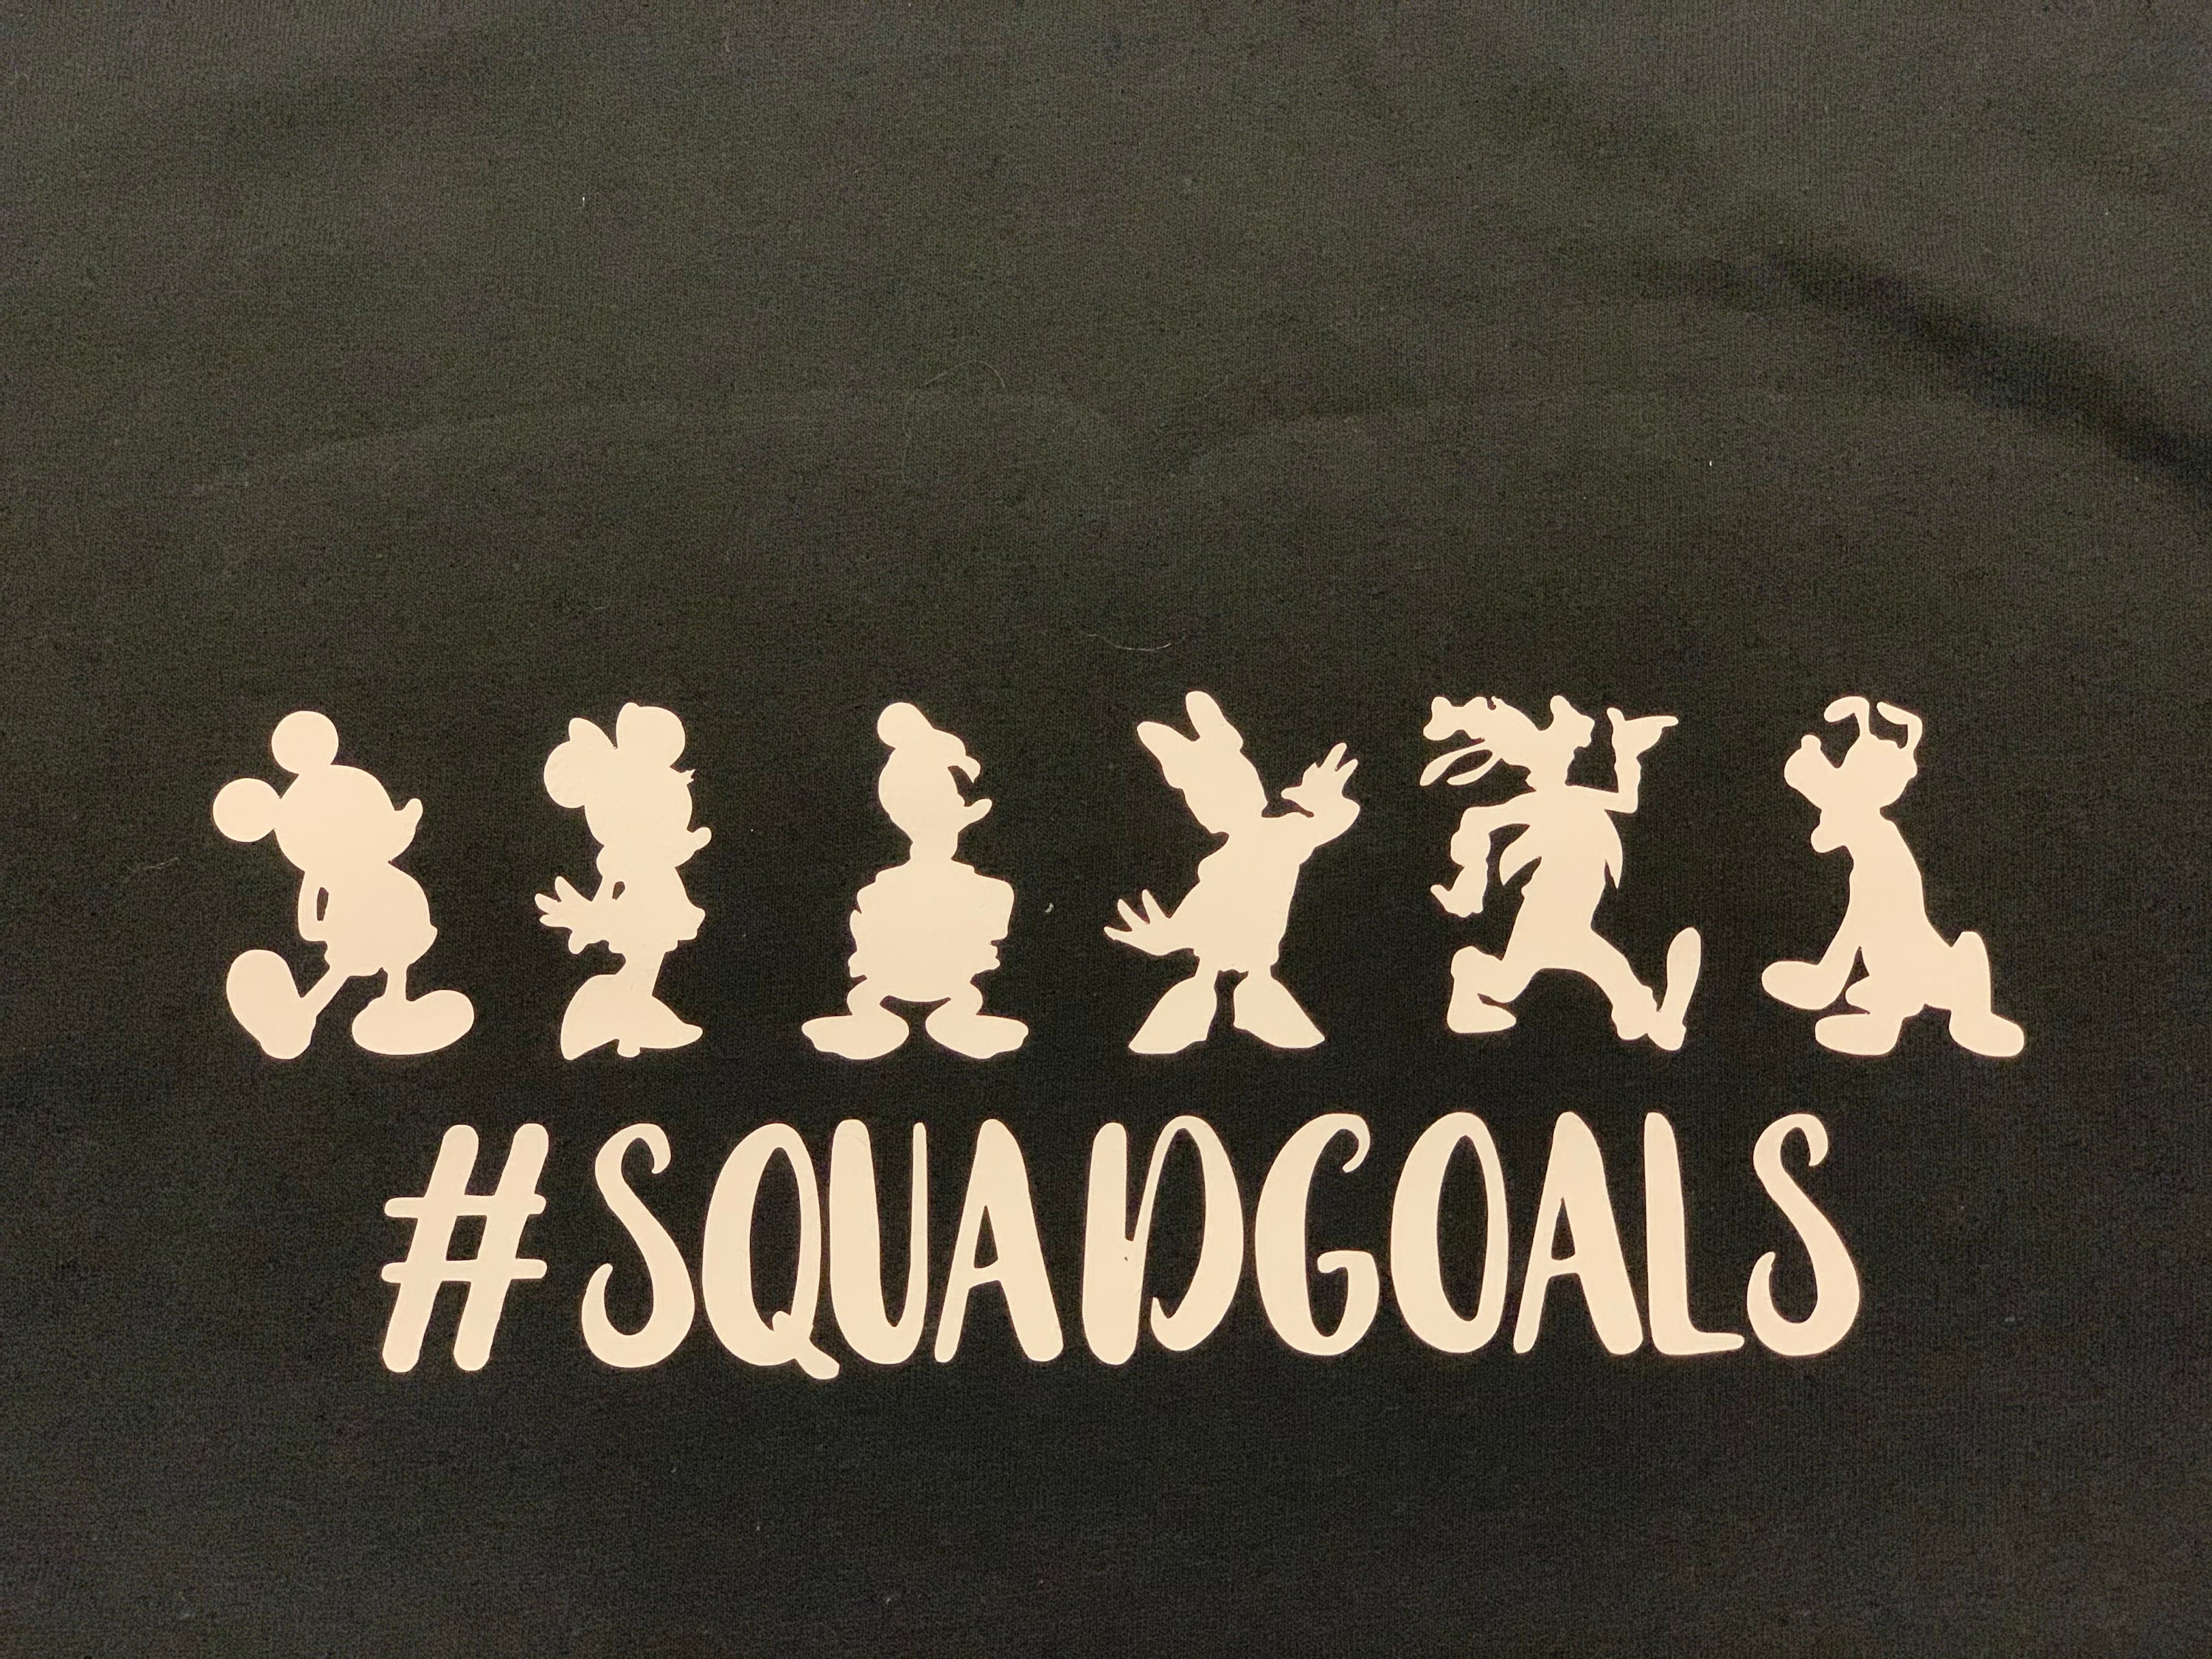 Discover Disney Squad Goals T-shirt